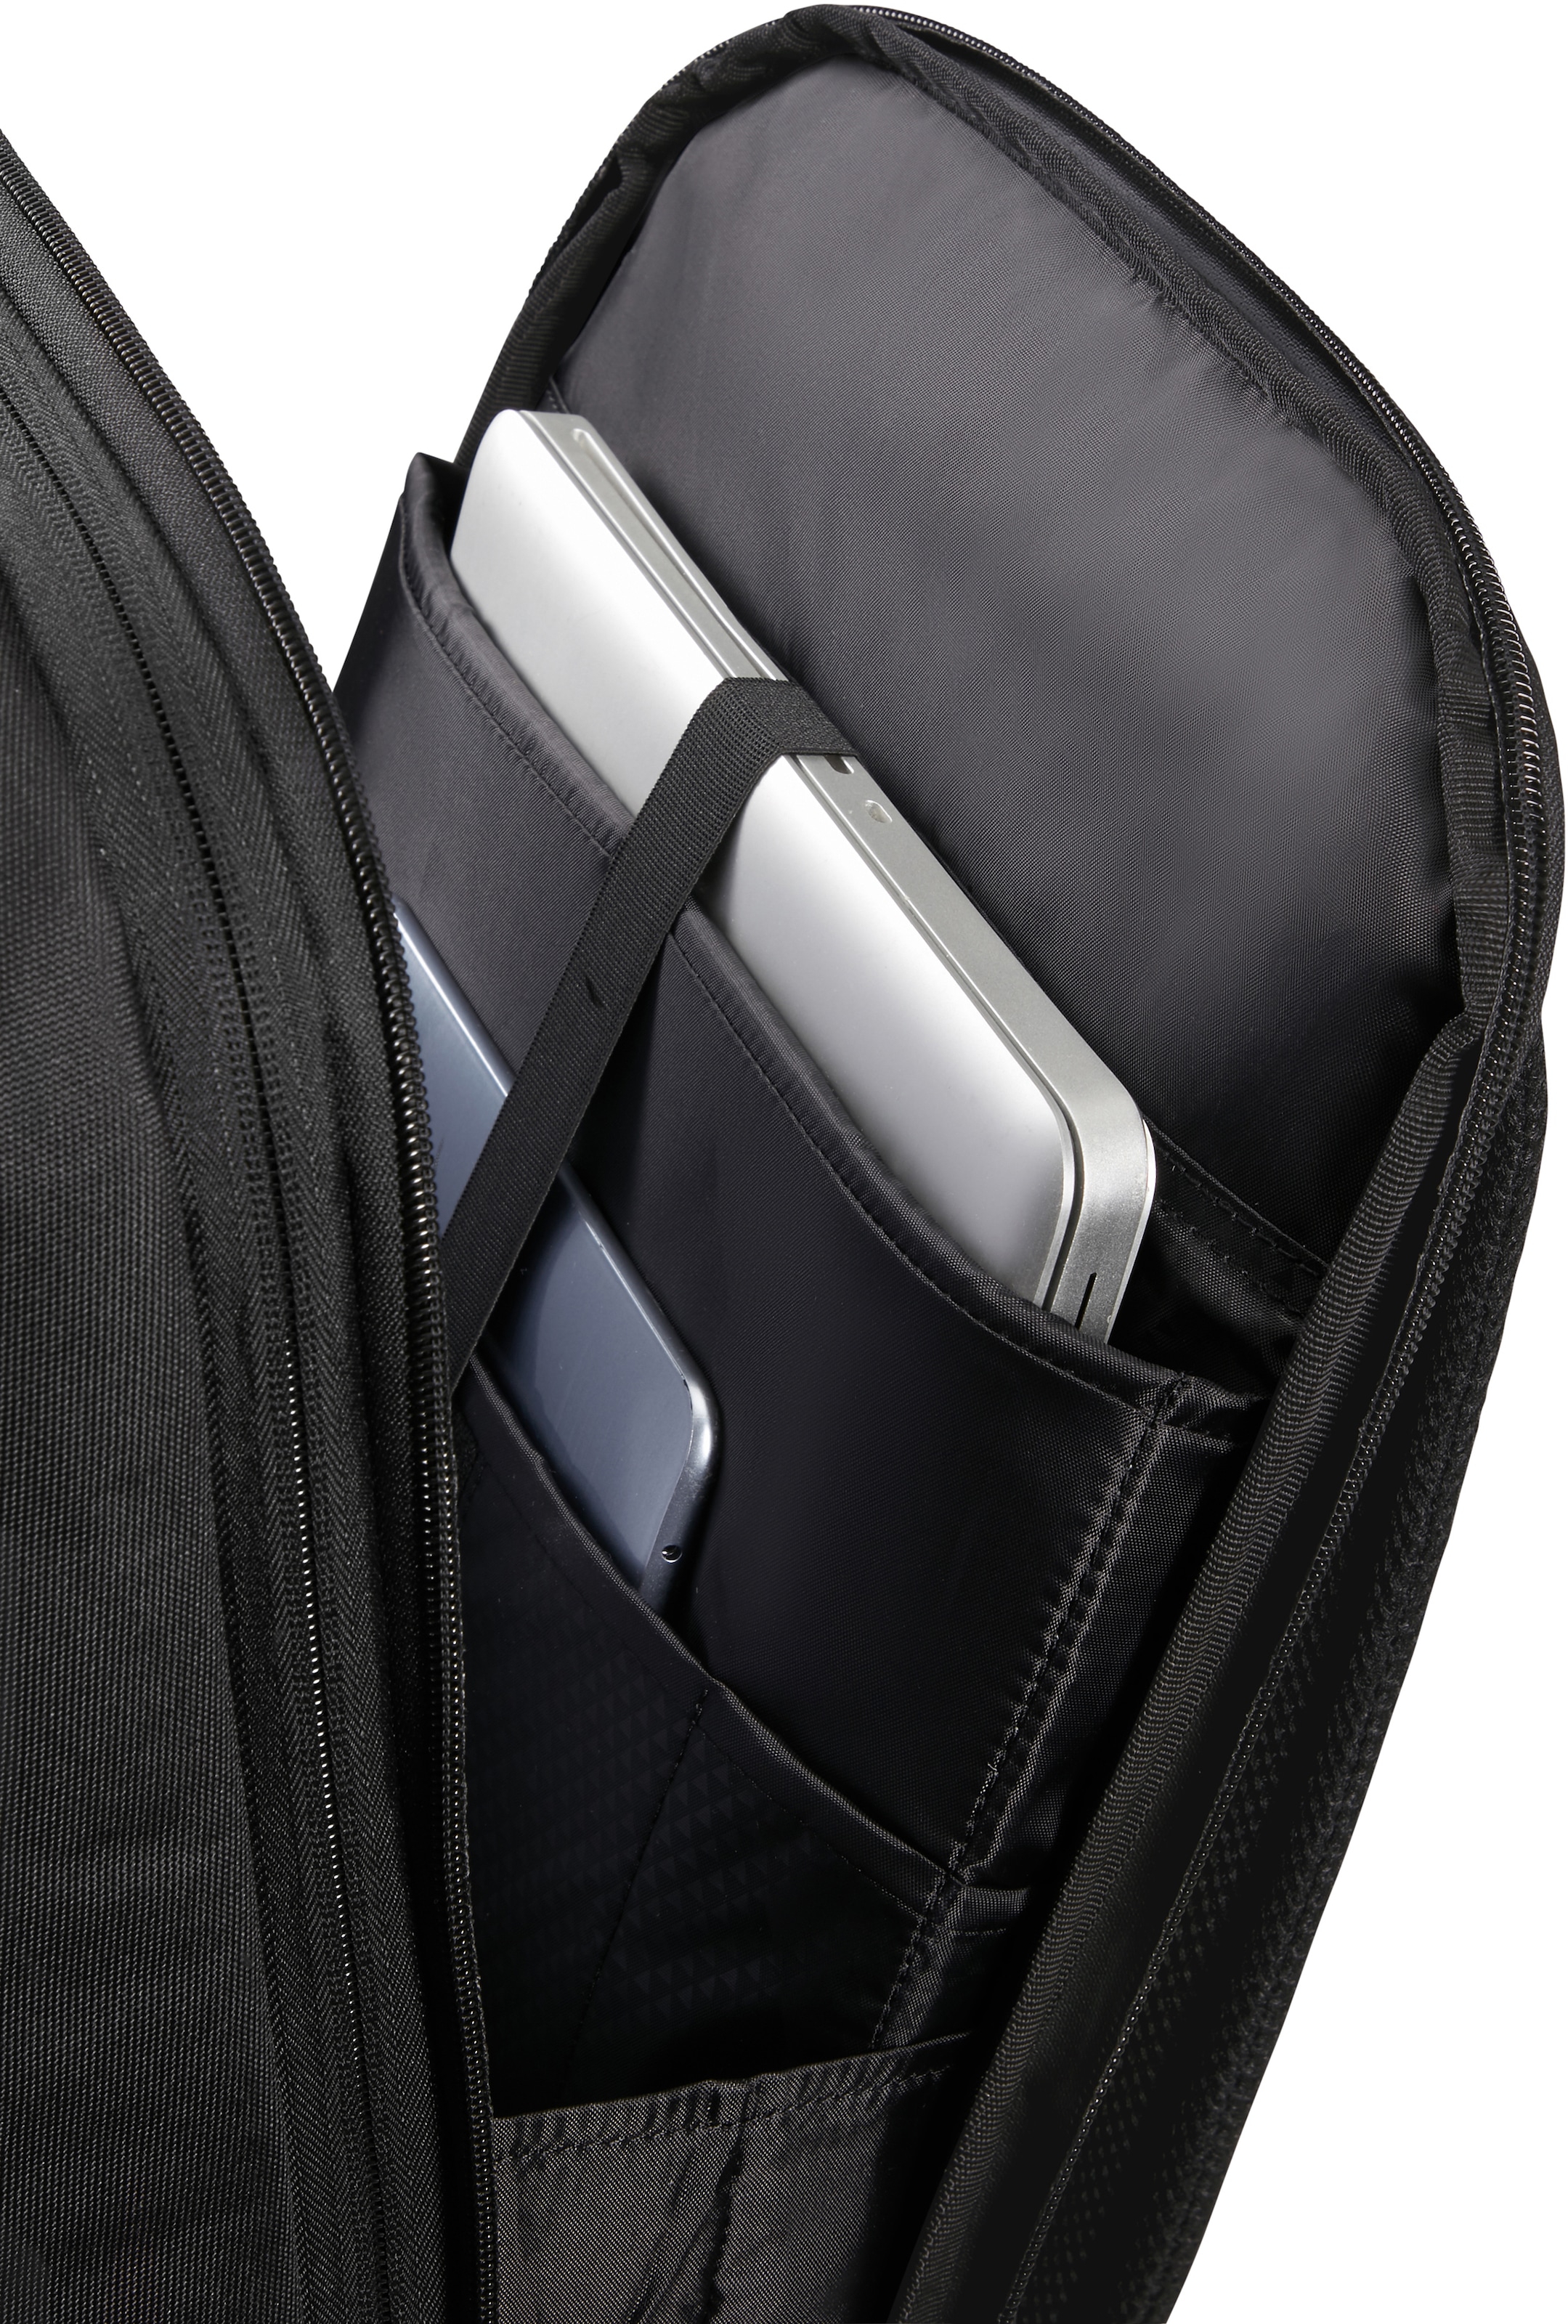 Samsonite Laptoprucksack »Stackd Biz«, Freizeitrucksack Schulrucksack USB-Schleuse Tablet-Laptopfach